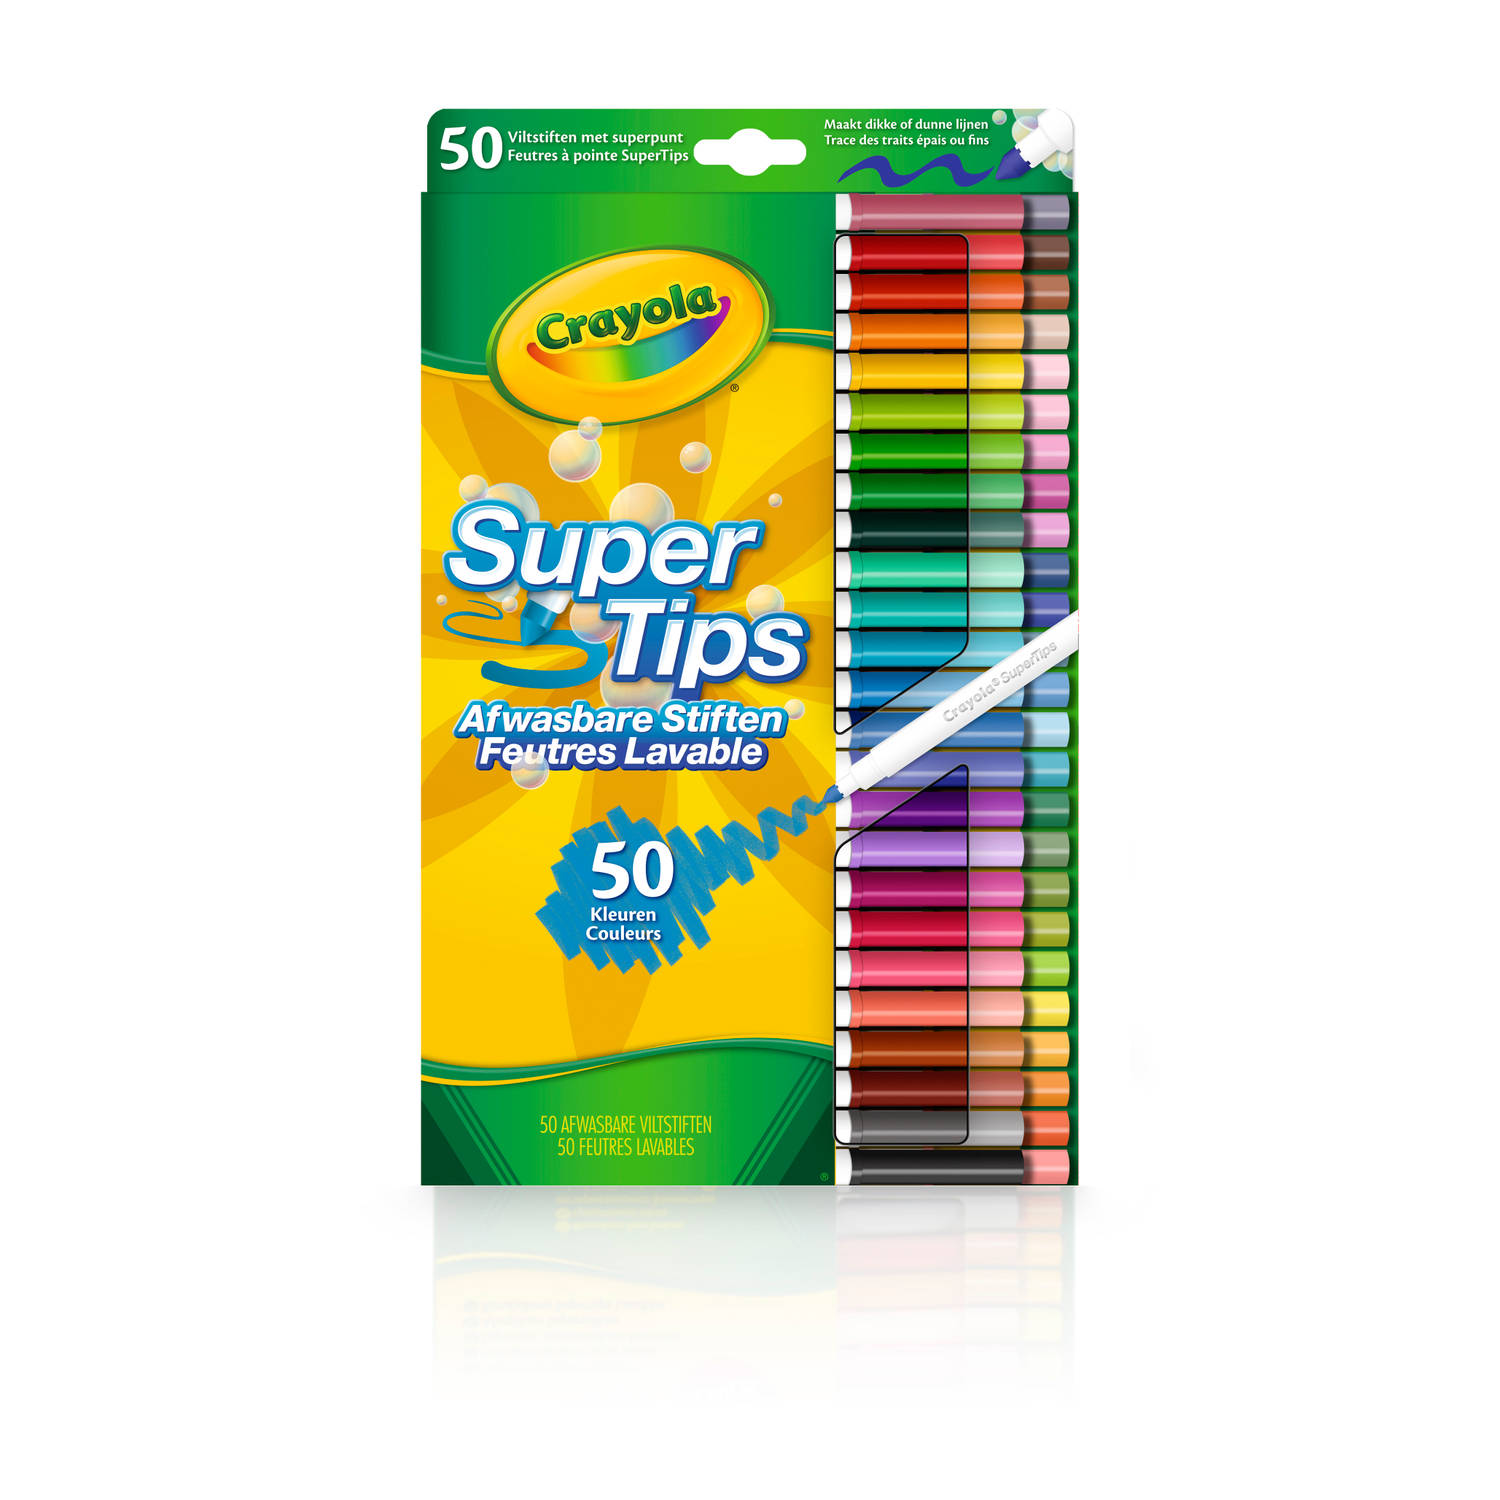 Crayola - Supertips - 50 Wasbare Viltstiften - Dunne en dikke lijnen